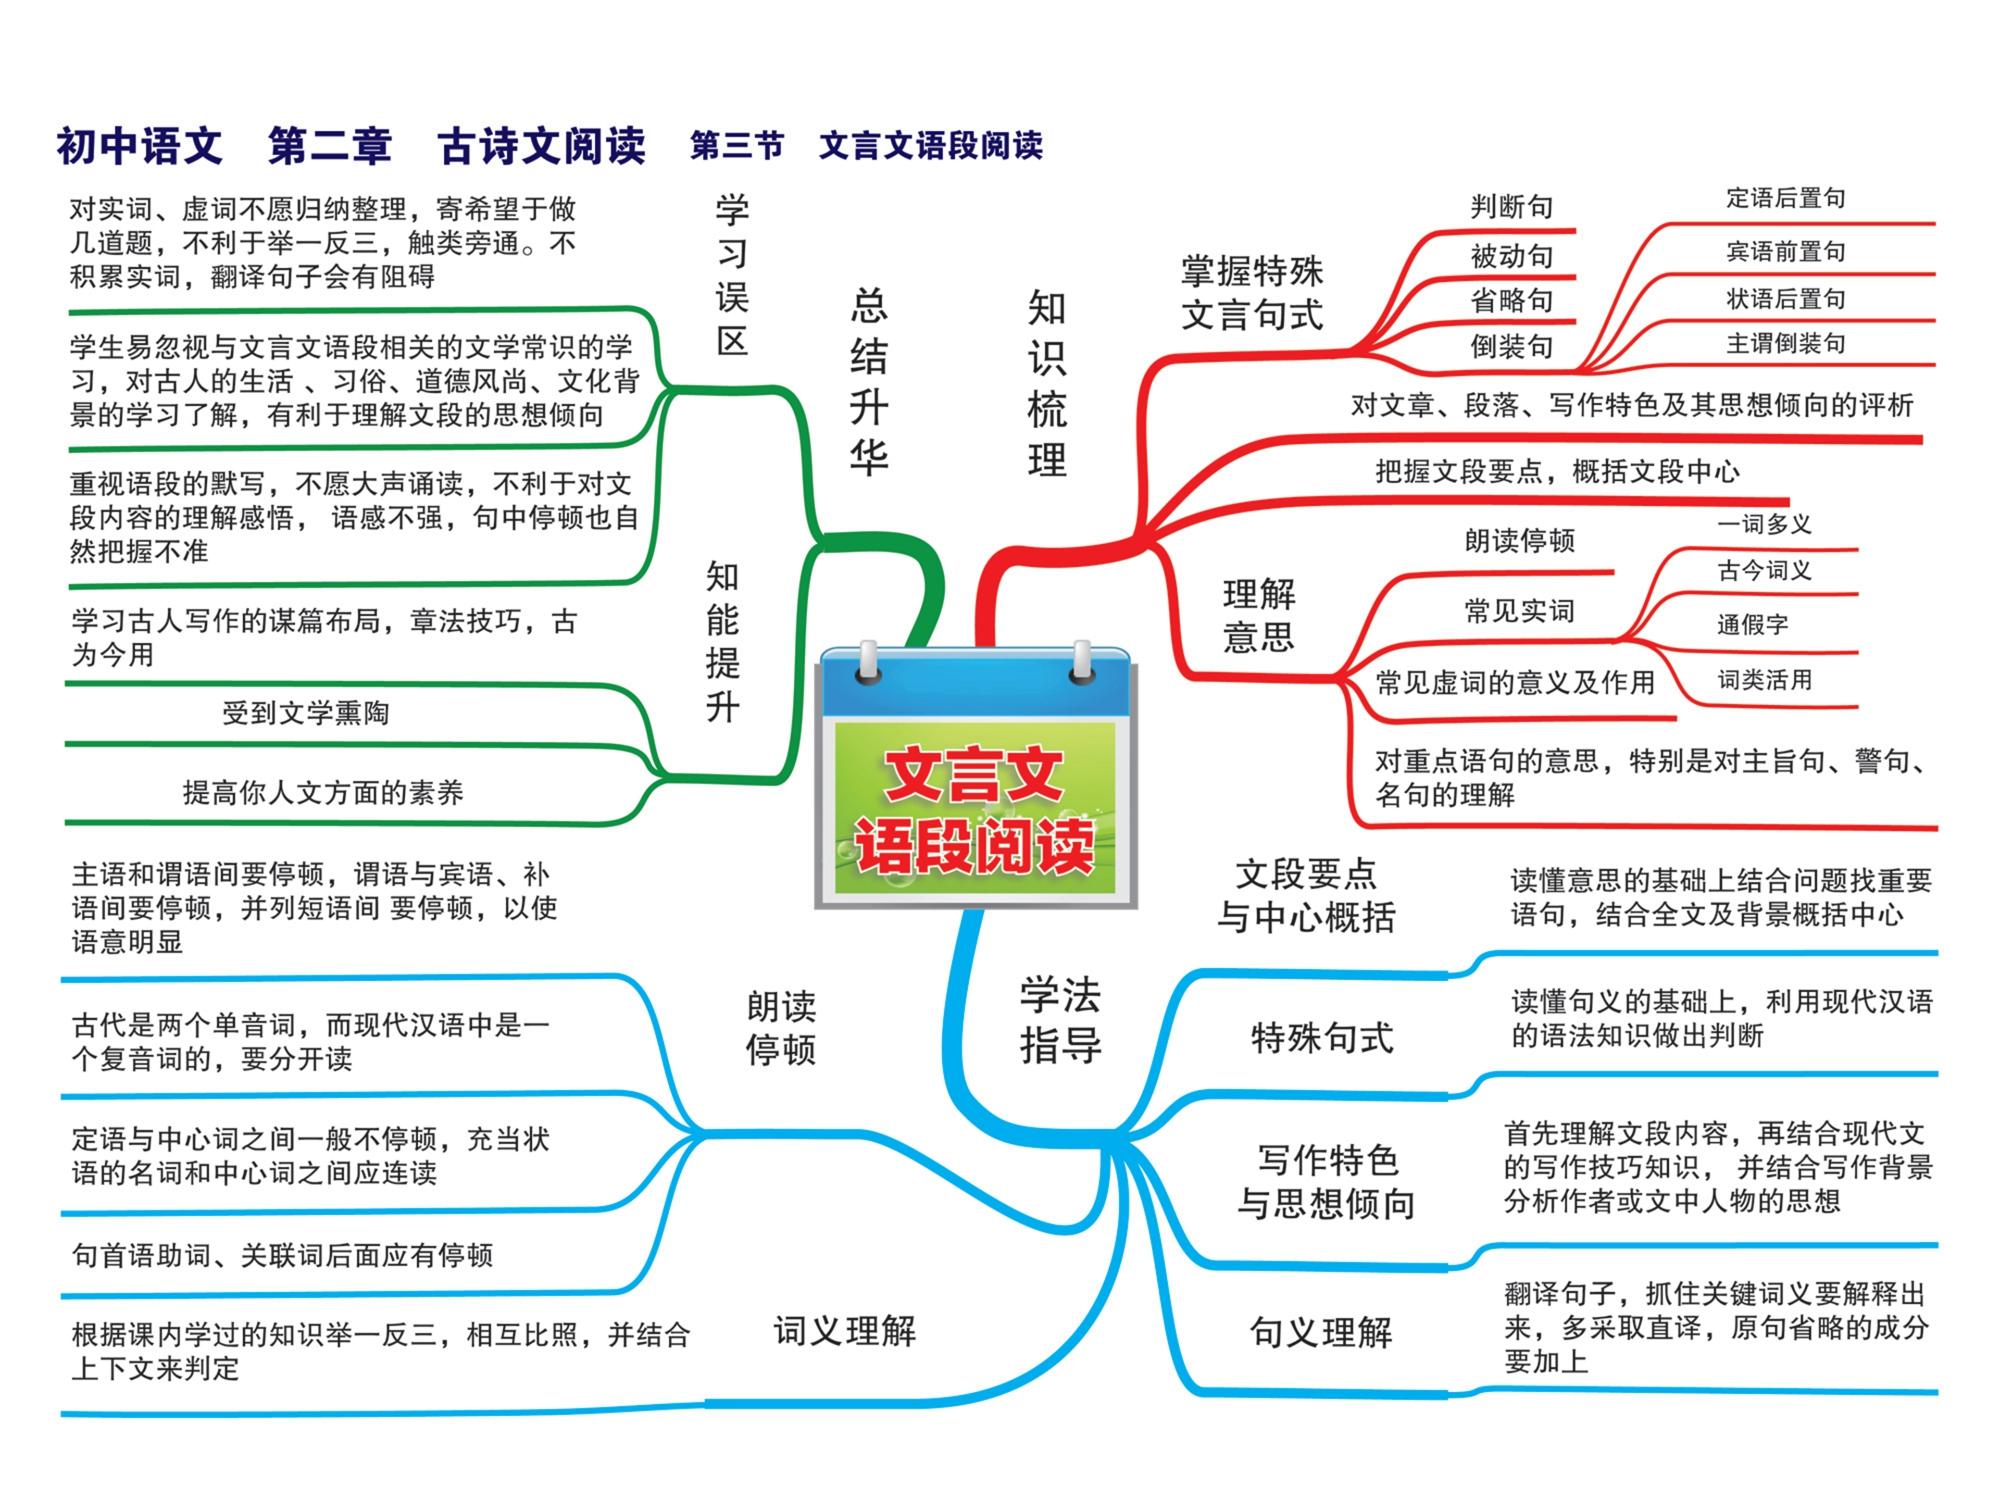 初中语文章节思维导图23张完整版通儒公考圈精制免费共享